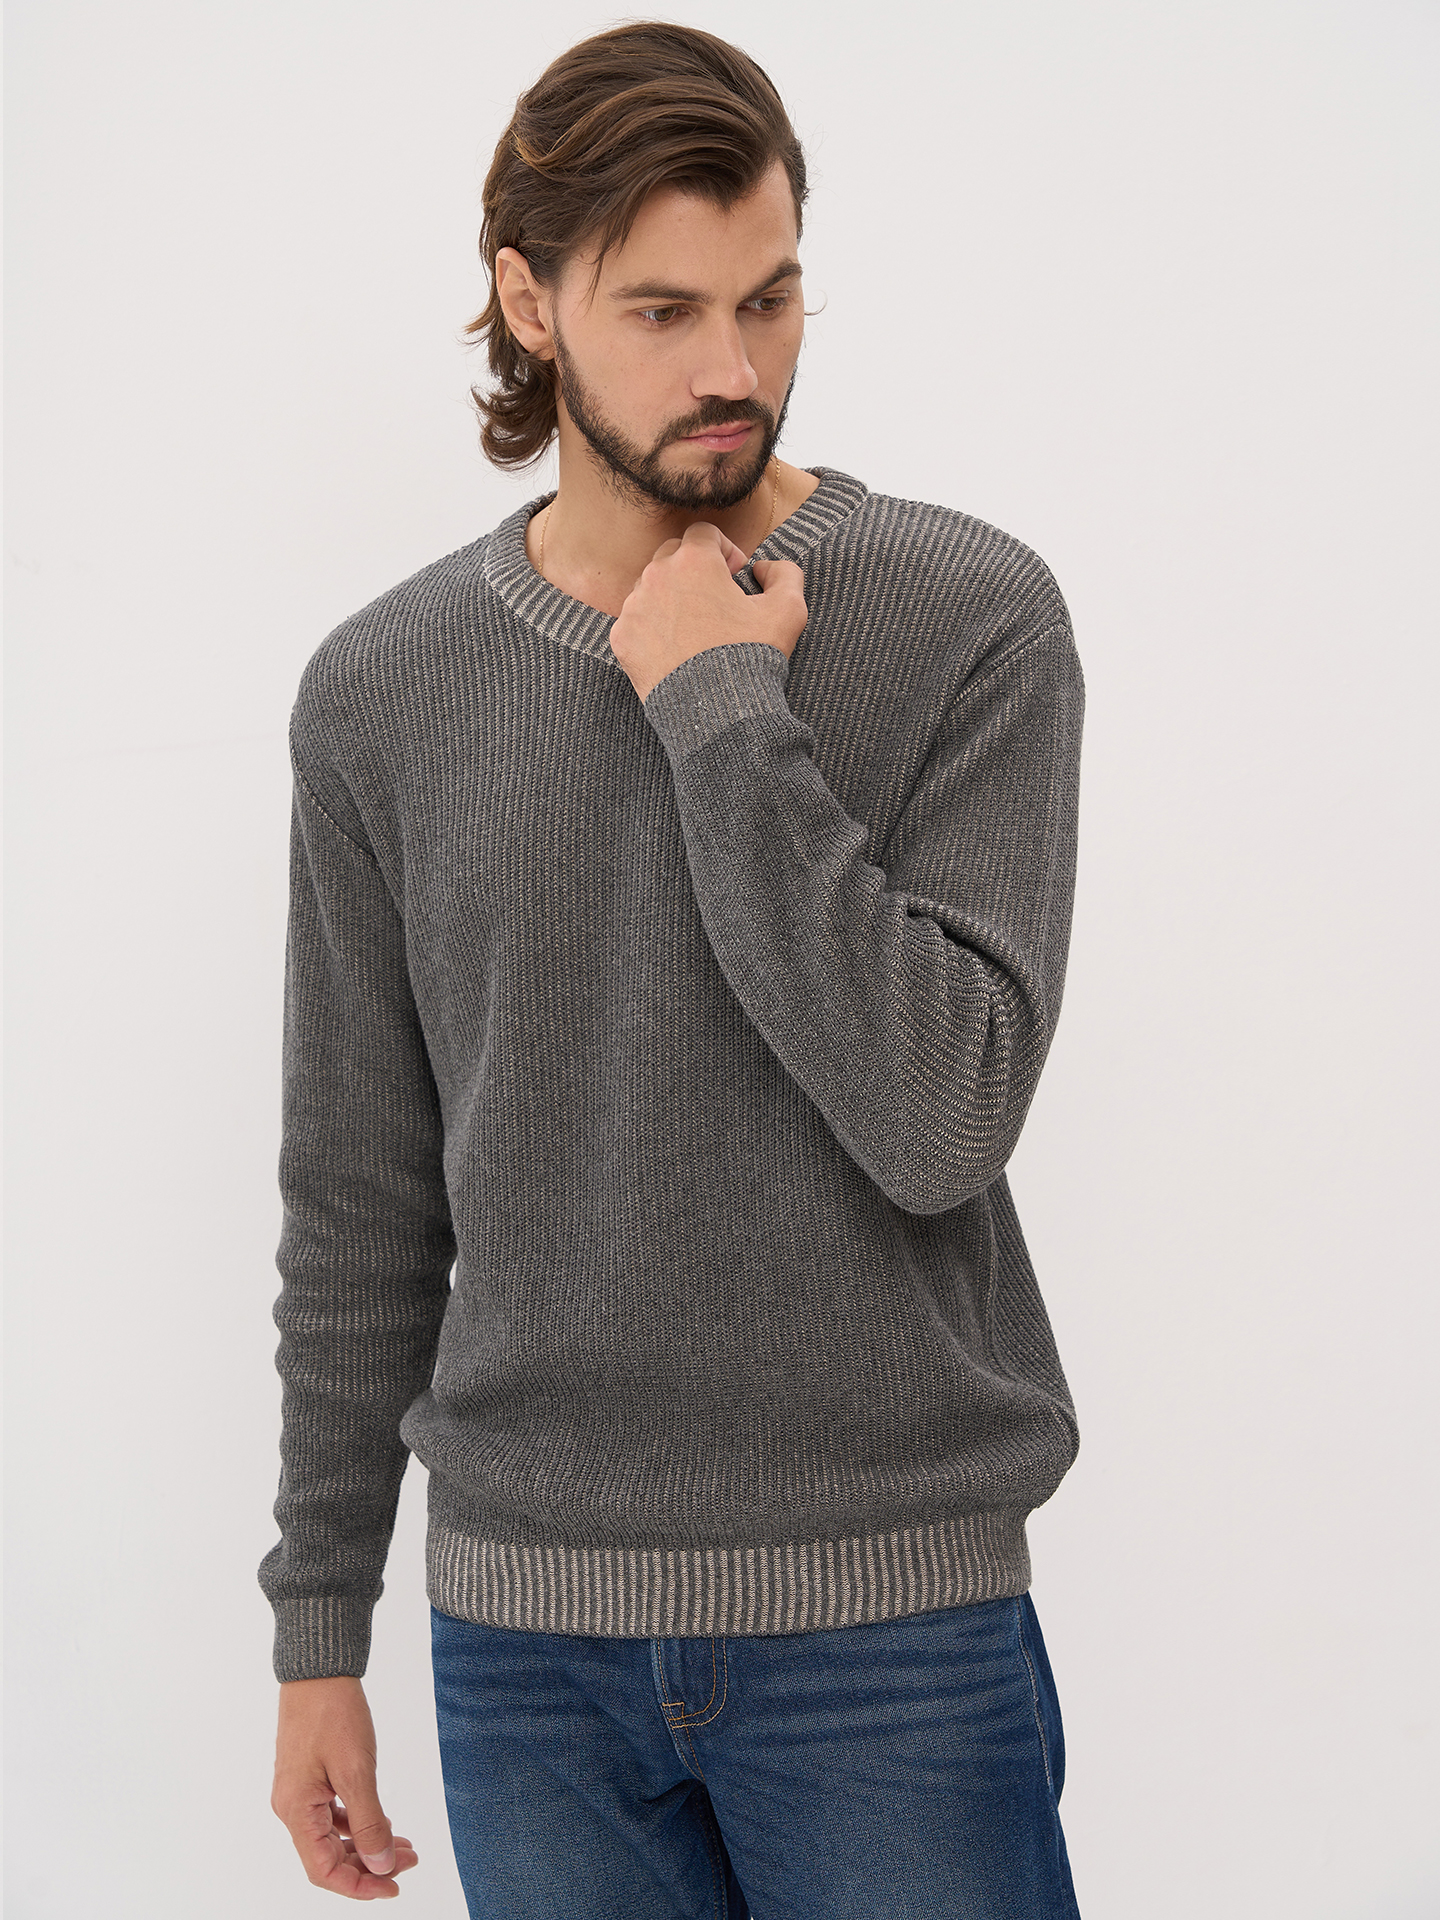 Модные мужские свитеры осень-зима 2021-2022 года